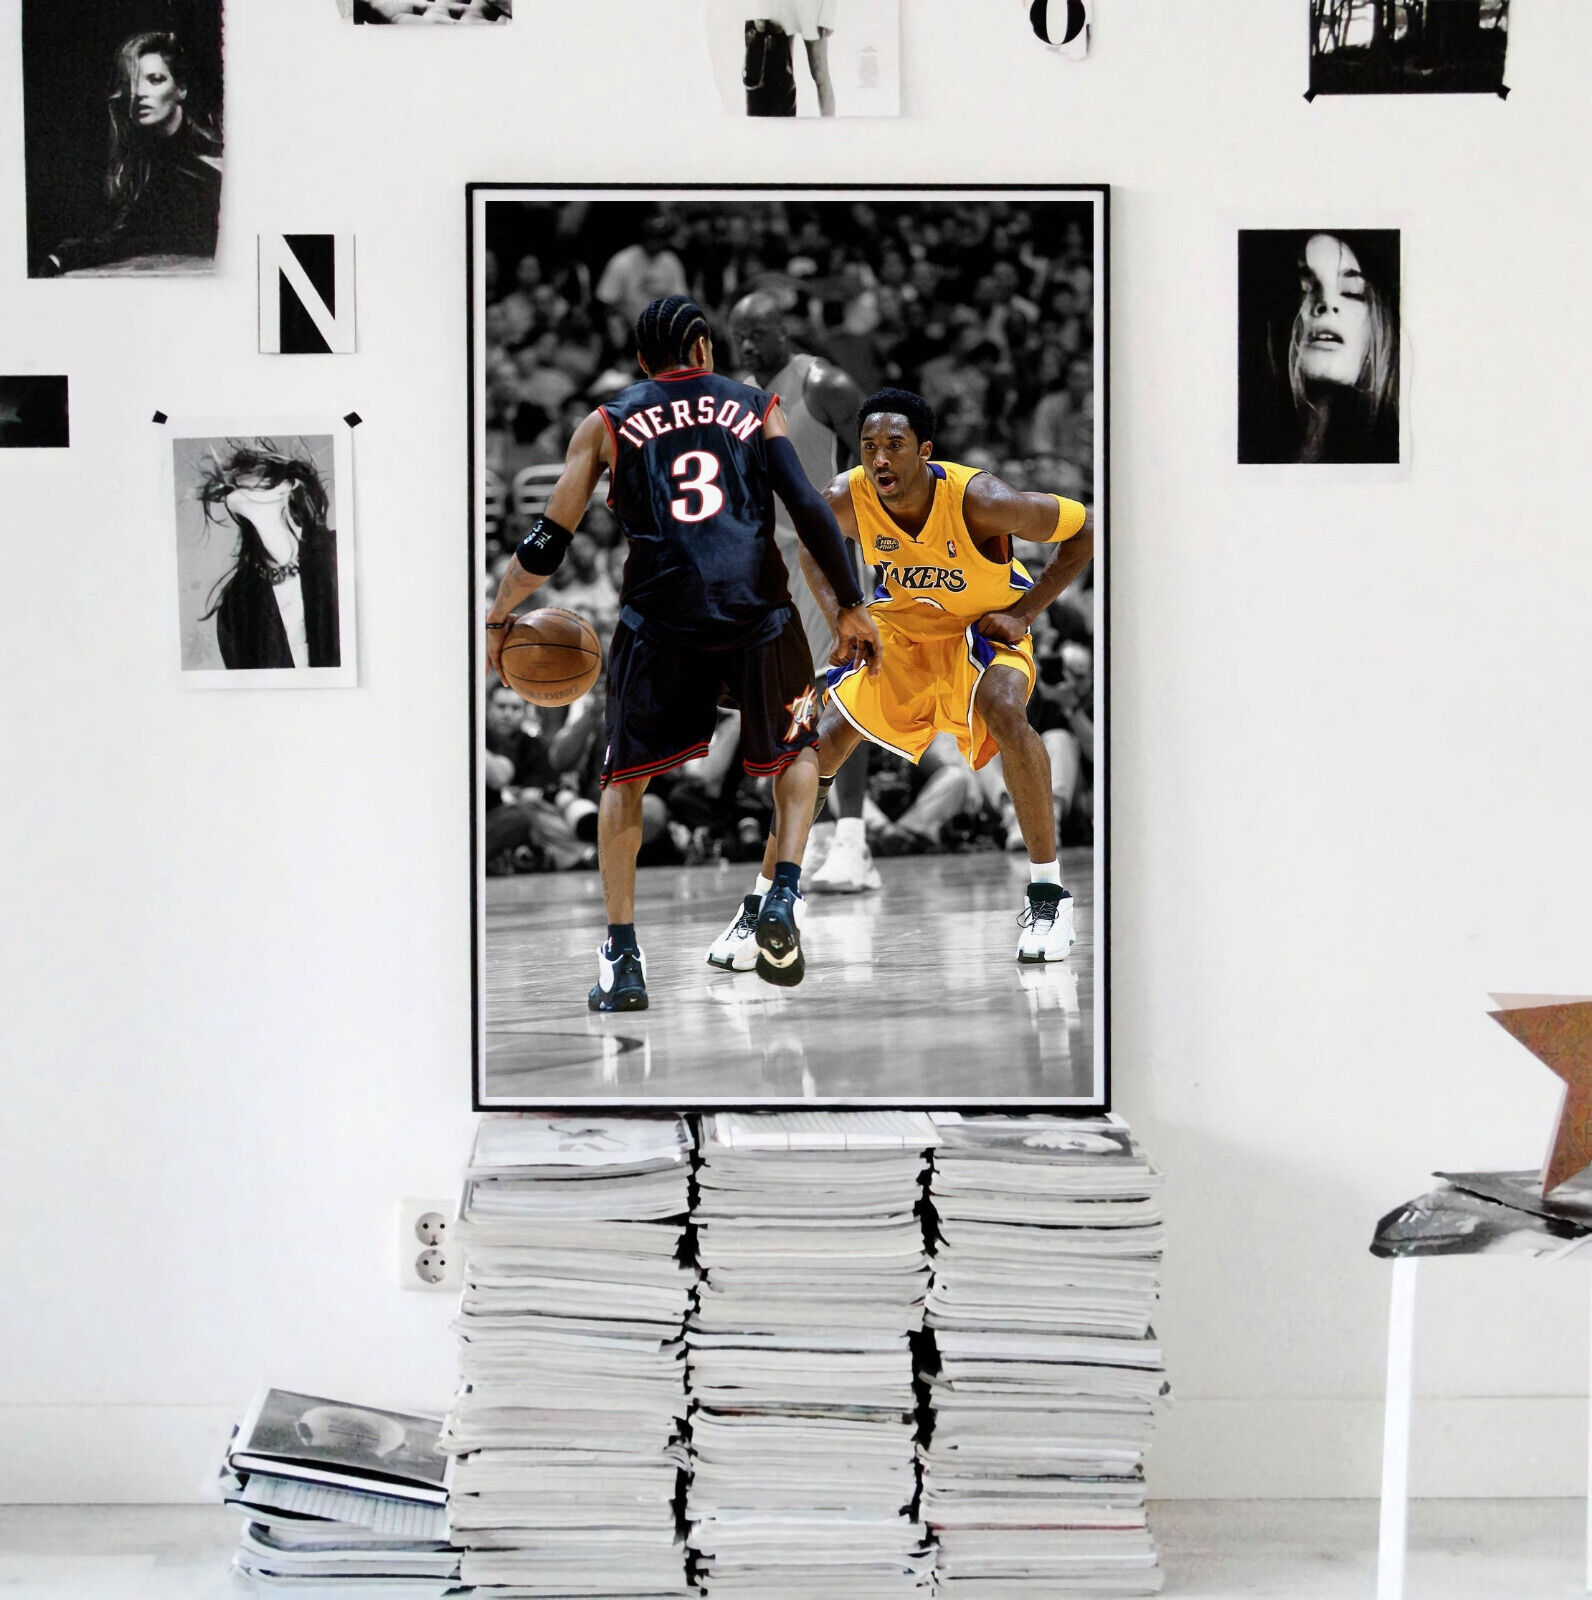 La emoción de Allen Iverson al ver un poster suyo con Kobe Bryant